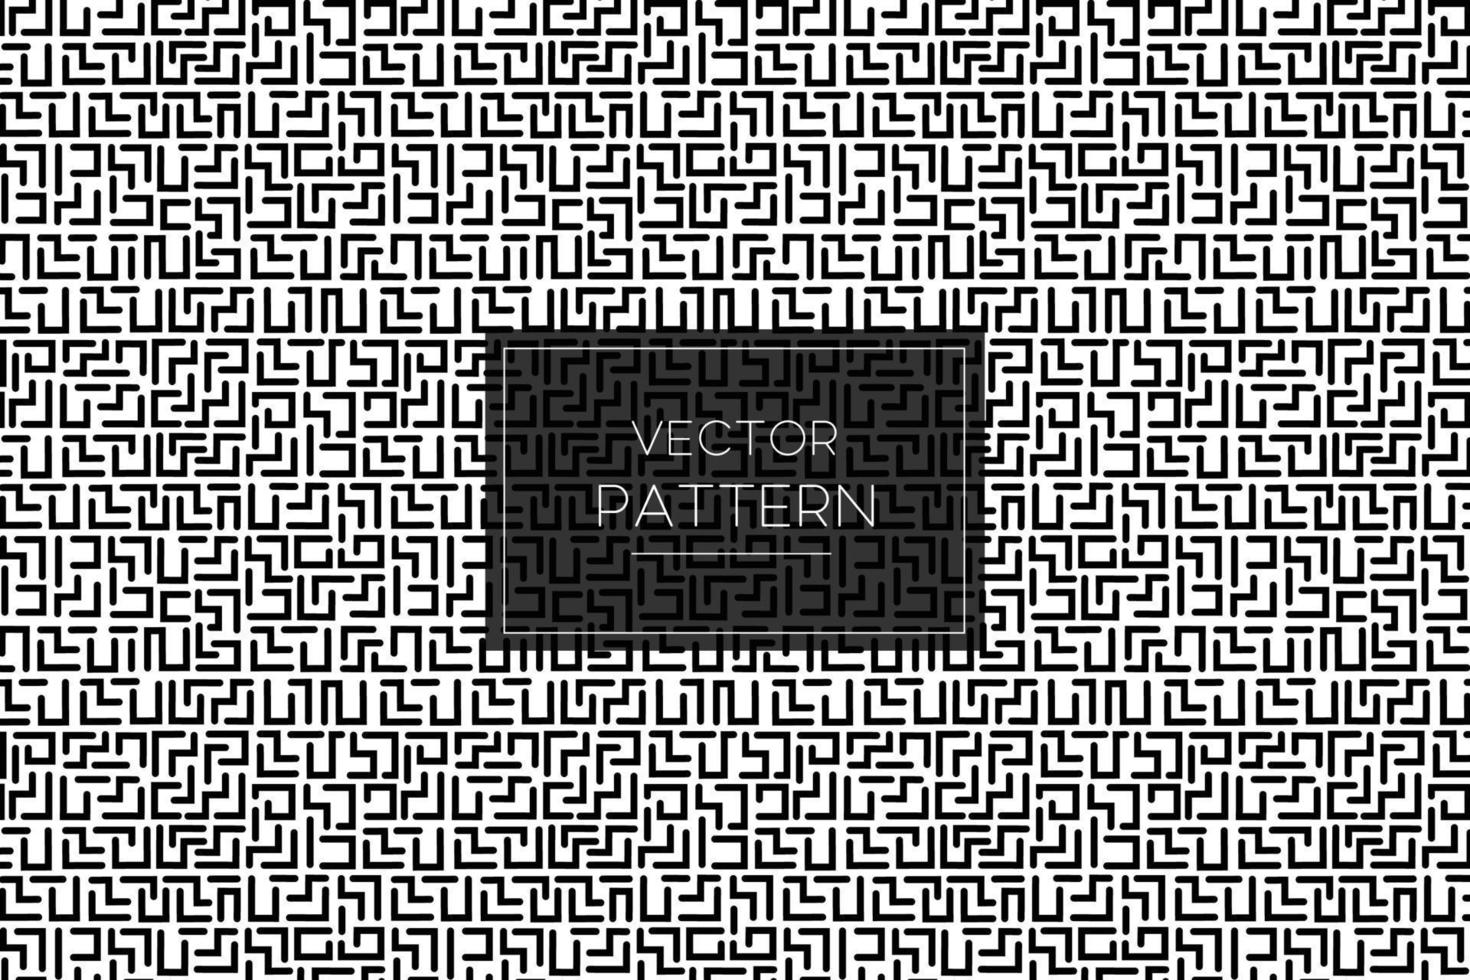 schwarze Linie formt Labyrinth-Labyrinth-Spieldesign nahtloses Vektormuster auf schwarzem und weißem Hintergrund vektor